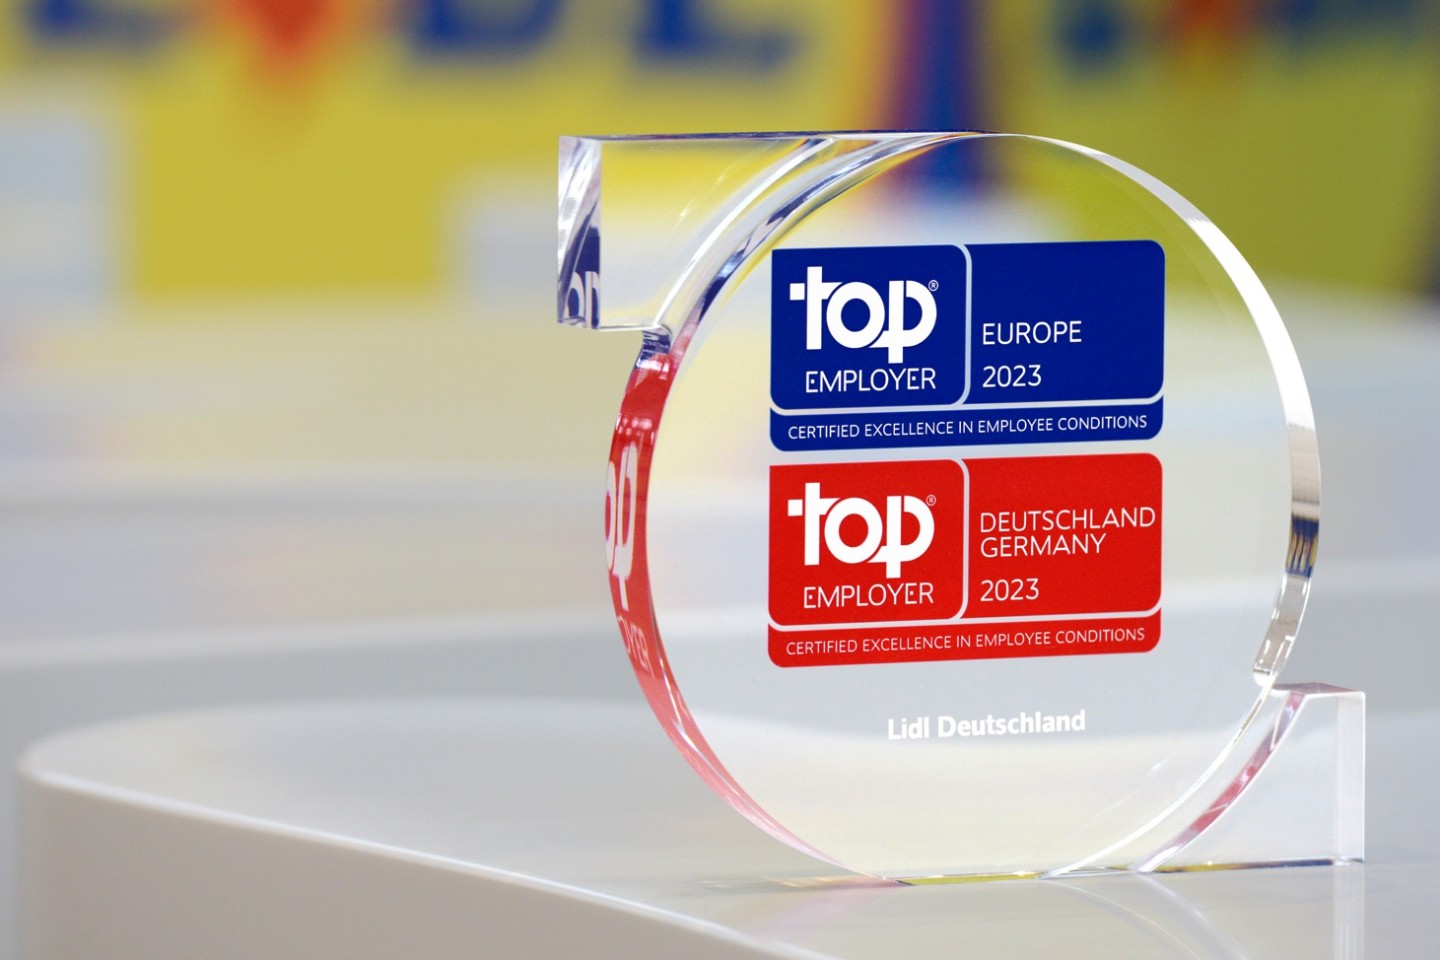 Lidl in Deutschland als Top Employer 2023 ausgezeichnet - Bild und Bildrechte Lidl